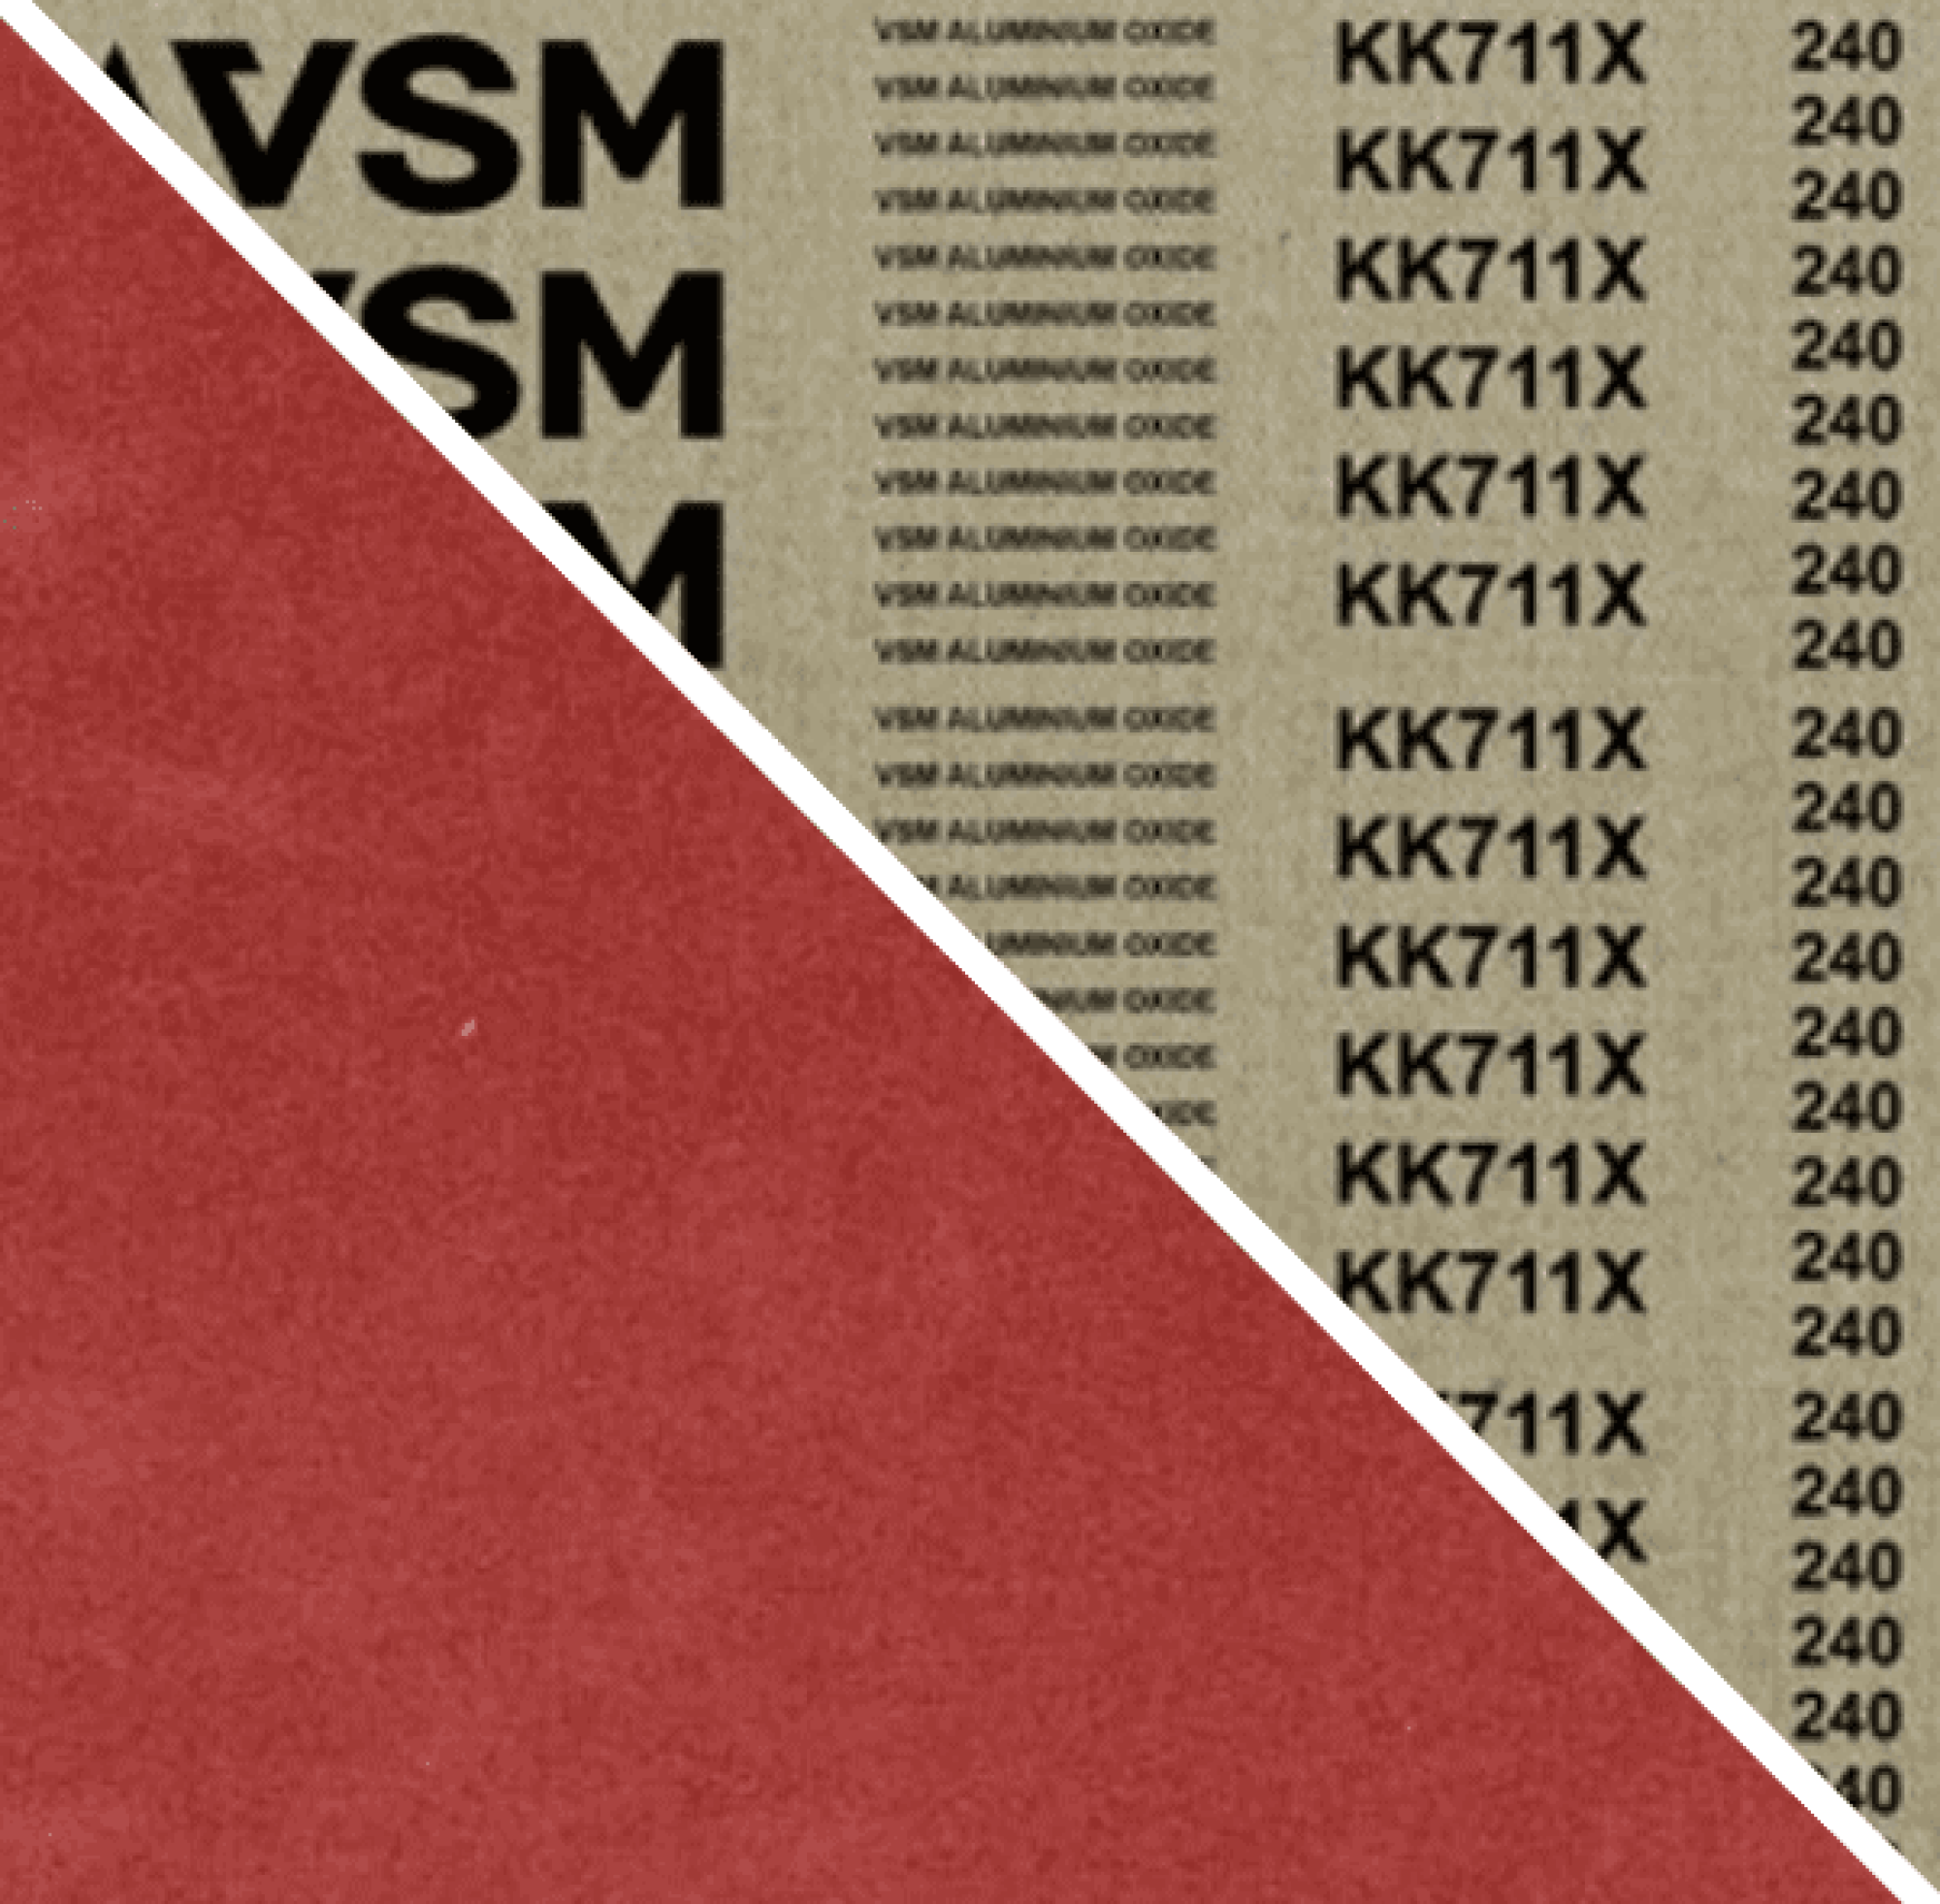 VSM ALUMINIUMOXID KK711X 730068, 1450 mm x 2620 mm, A, P240, X-Baumwolle, Ausführung (E07), Rot-braun, Breitschleifband mit Aluminium, Für Edelstahl und NE-Metalle